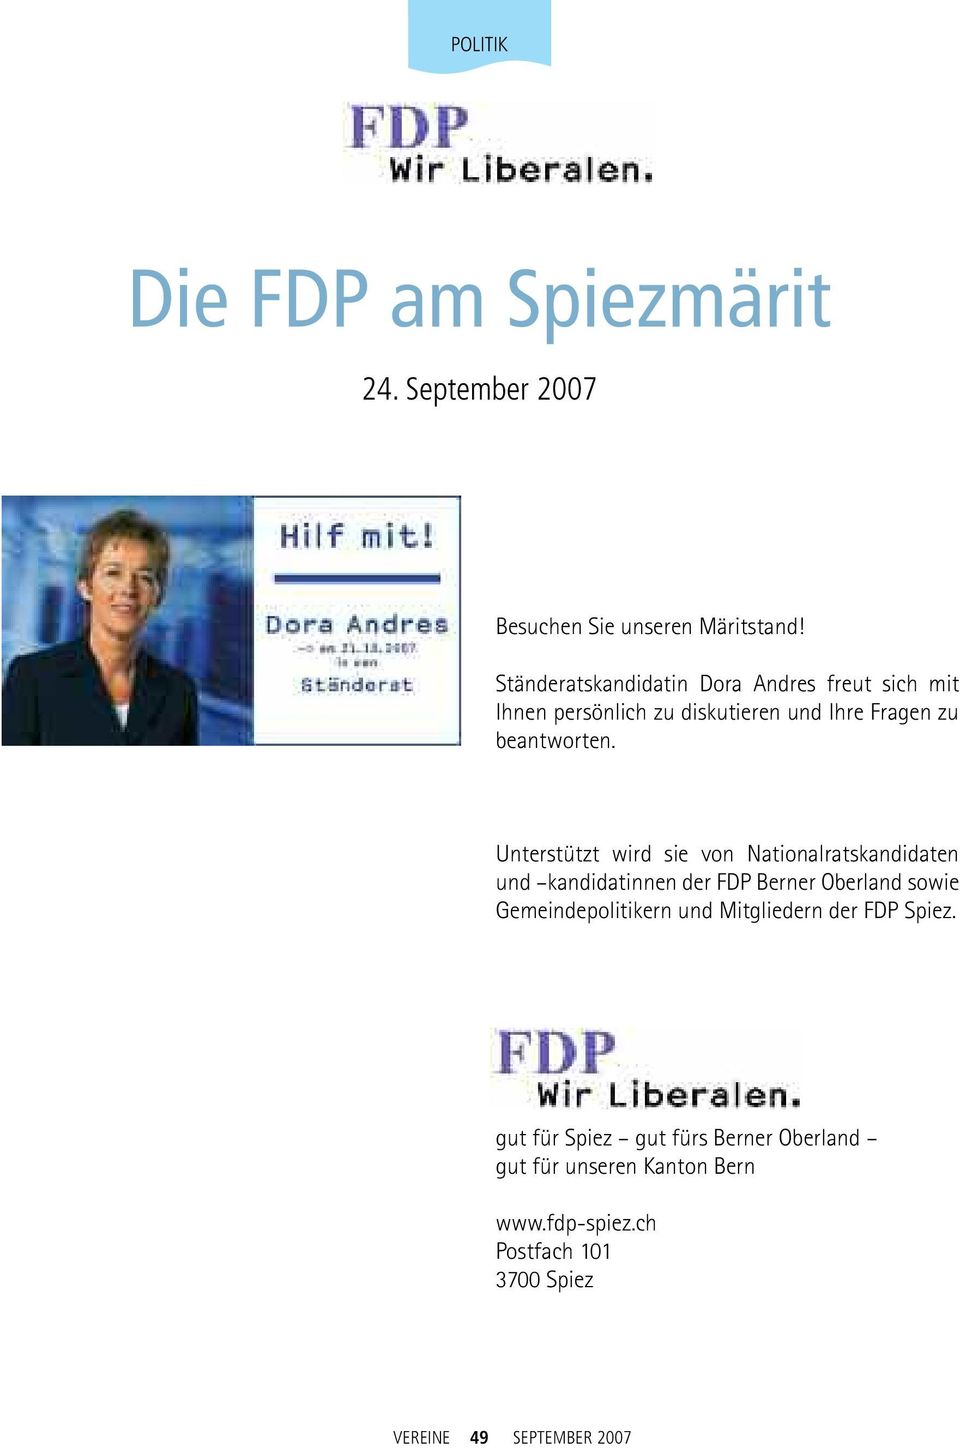 Unterstützt wird sie von Nationalratskandidaten und kandidatinnen der FDP Berner Oberland sowie Gemeindepolitikern und